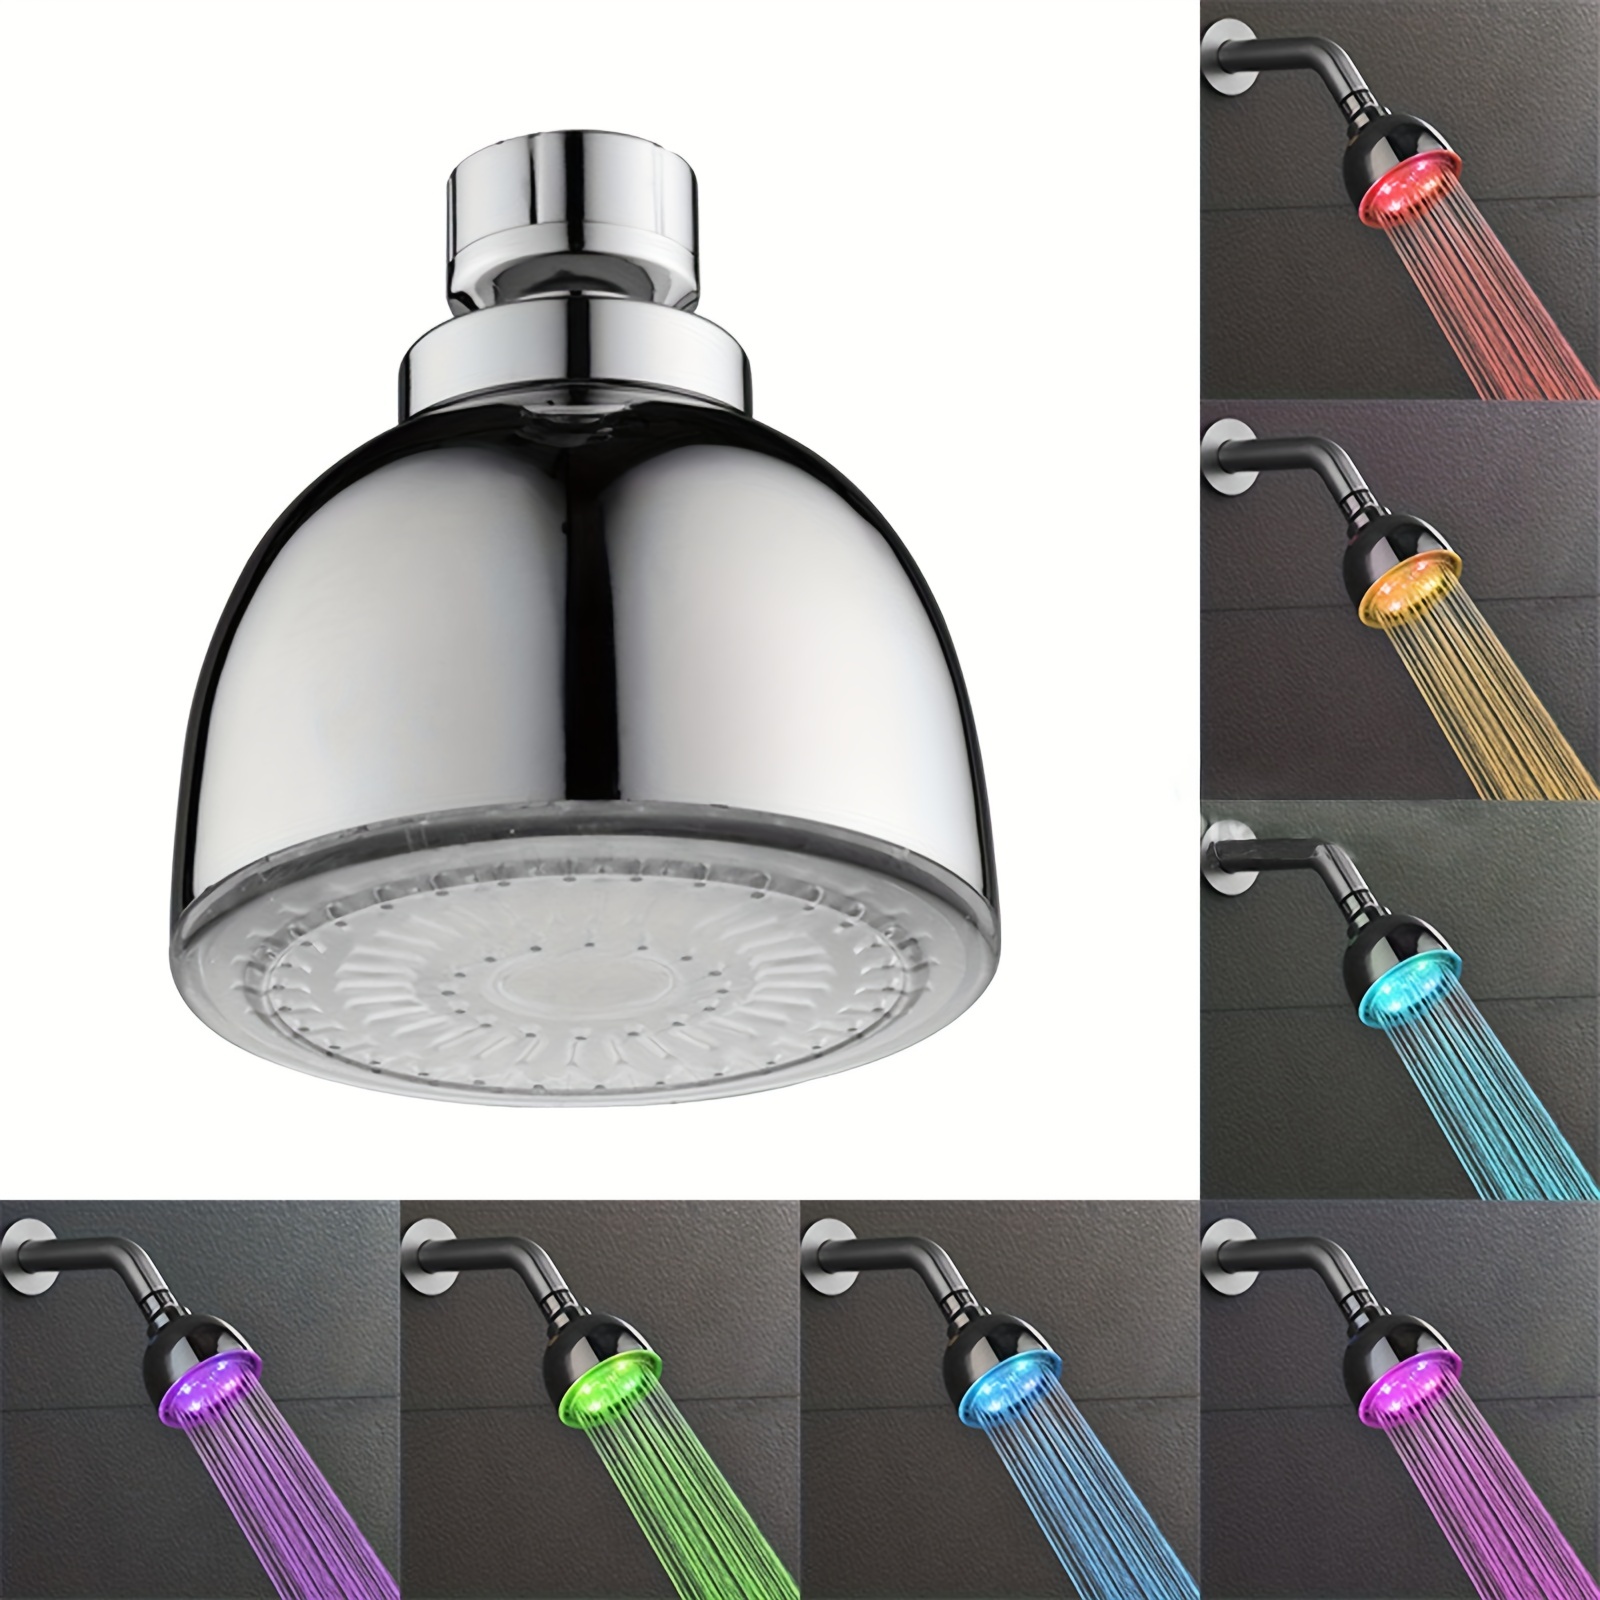  Cabezal de ducha LED, cabezal de ducha con luz, luz de flash de  7 colores que cambia automáticamente, cabezal de ducha fijo LED para baño,  cabezal de ducha ajustable de alta